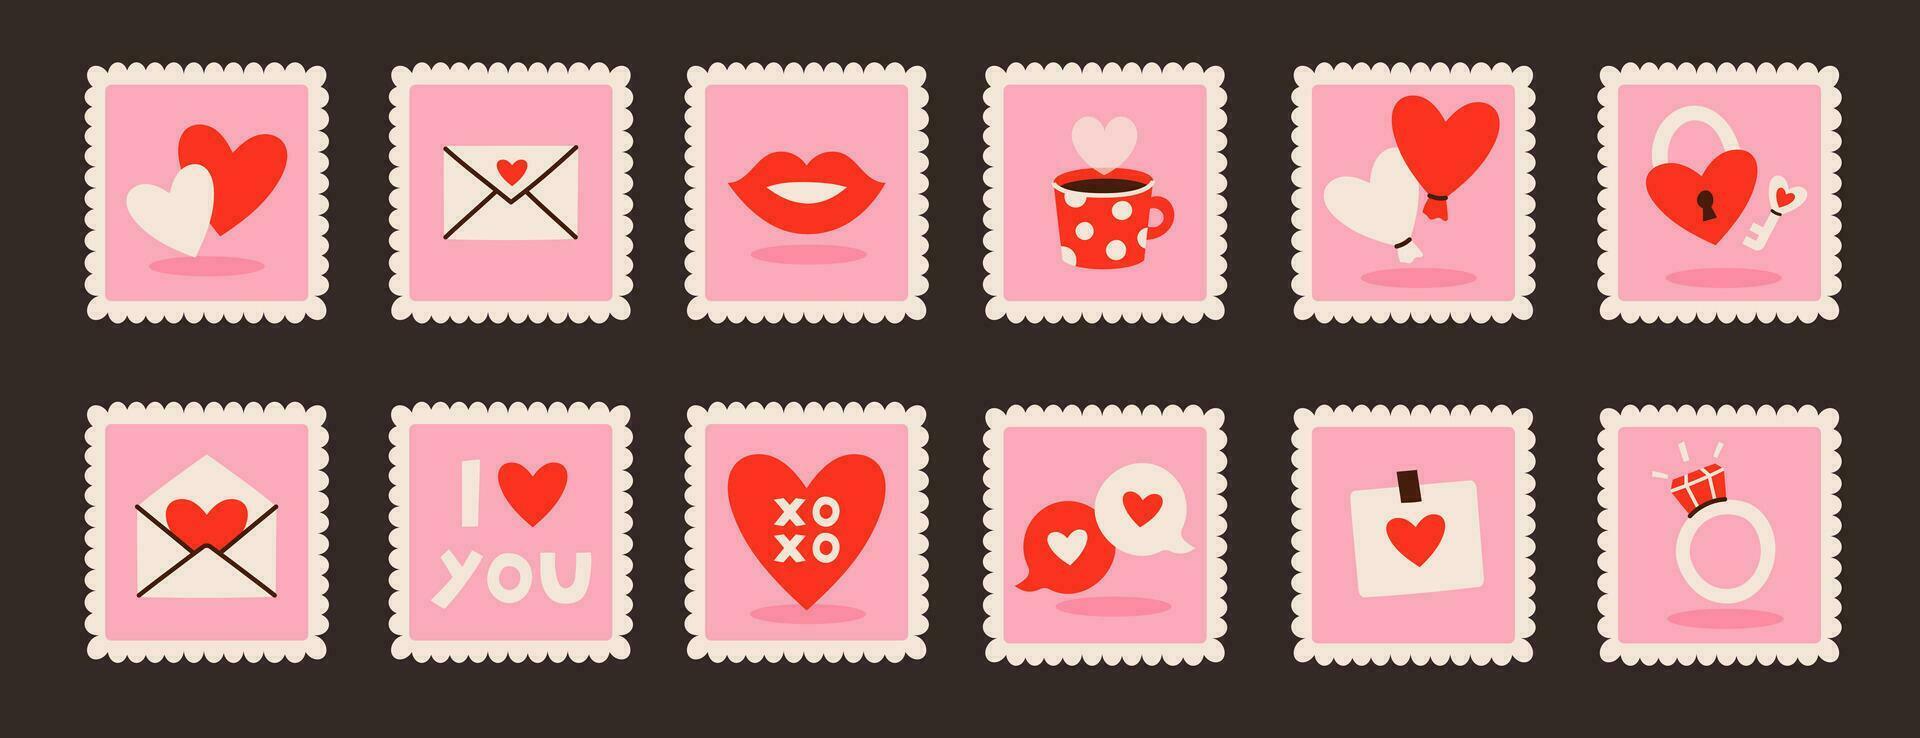 einstellen von romantisch bunt Briefmarken vektor